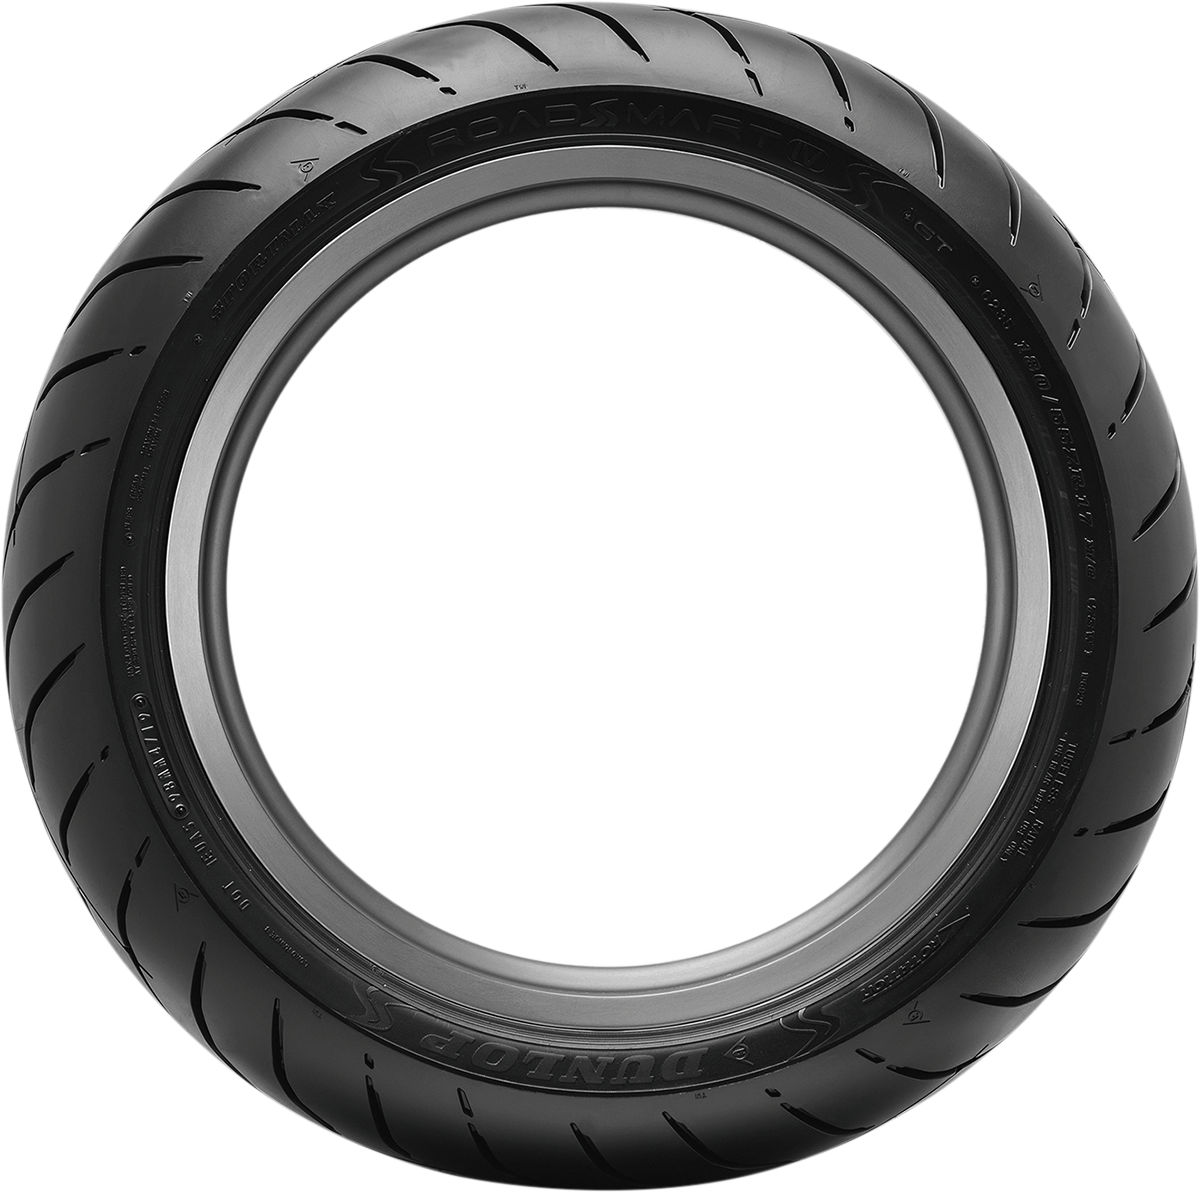 DUNLOP Tire - Sportmax® Roadsmart IV - Rear - 190/55ZR17 - (75W) 45253306